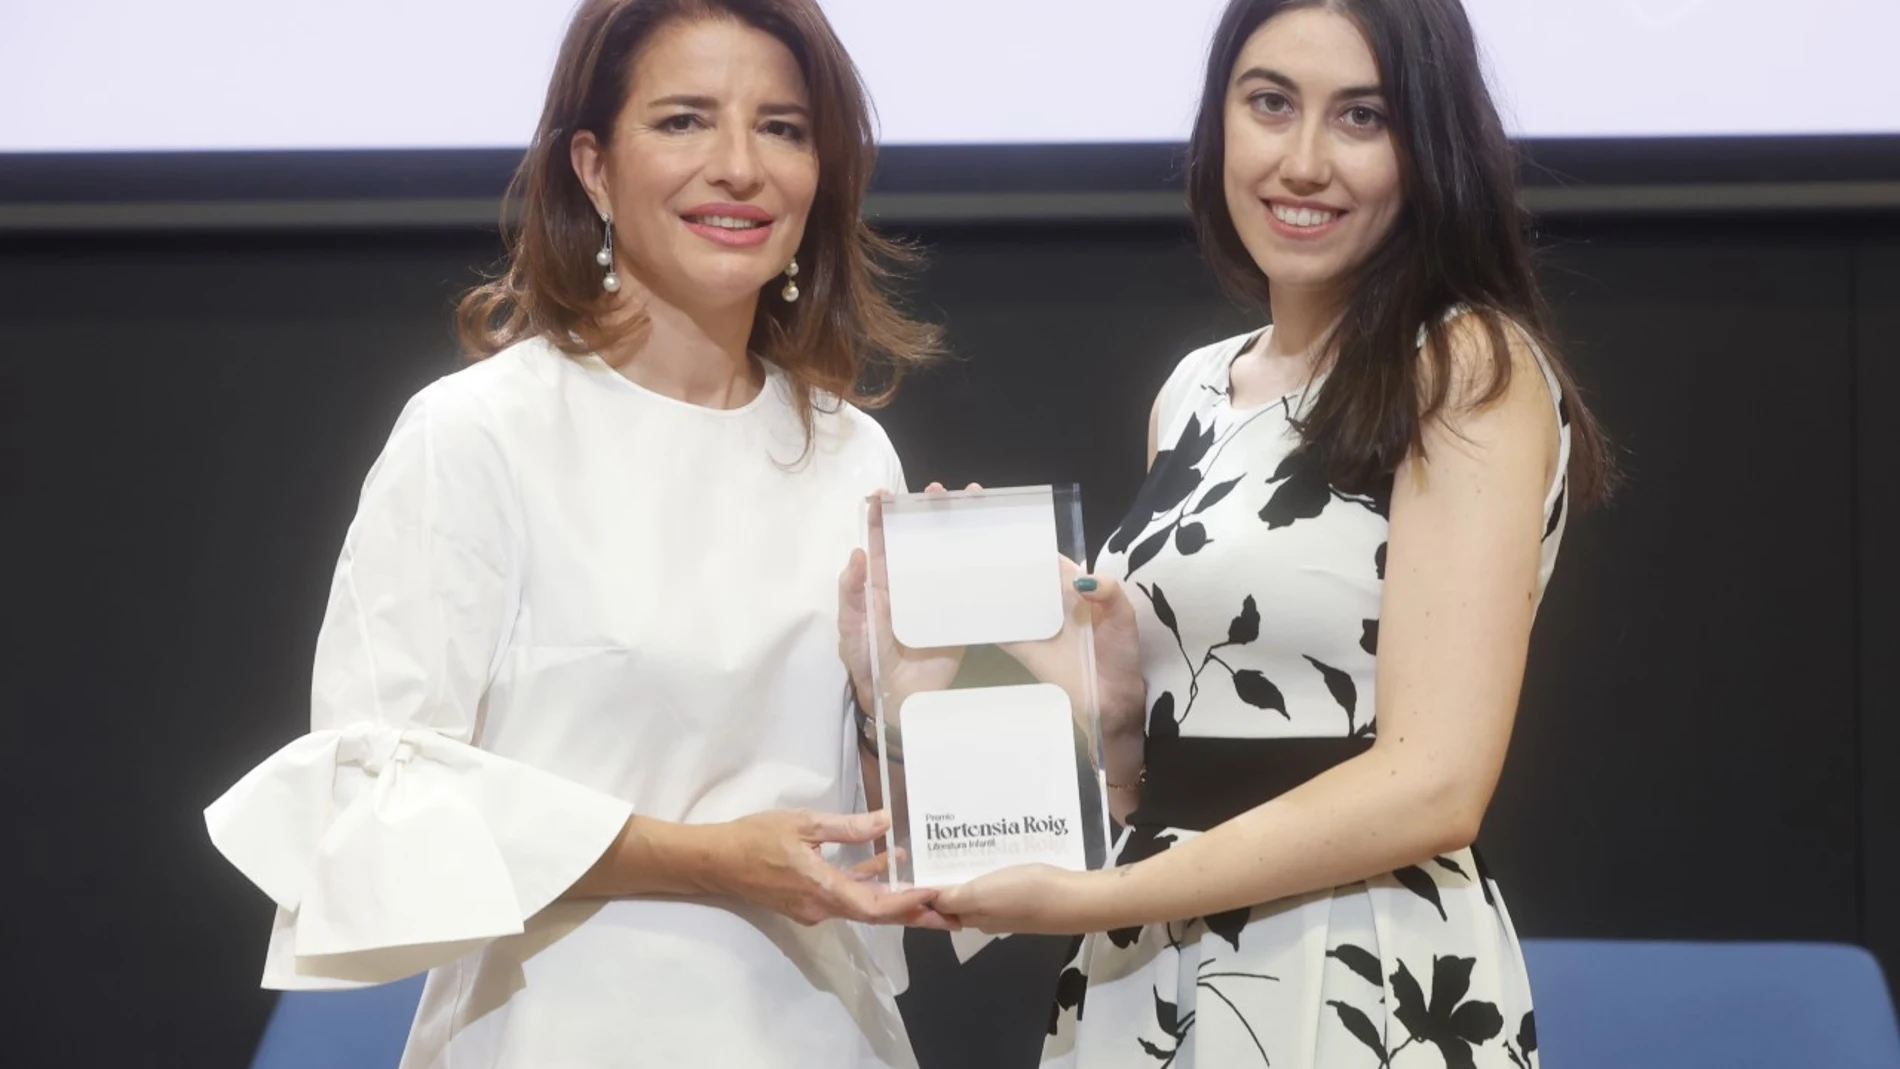 Hortensia Roig entrega el premio a Andrea Navarro